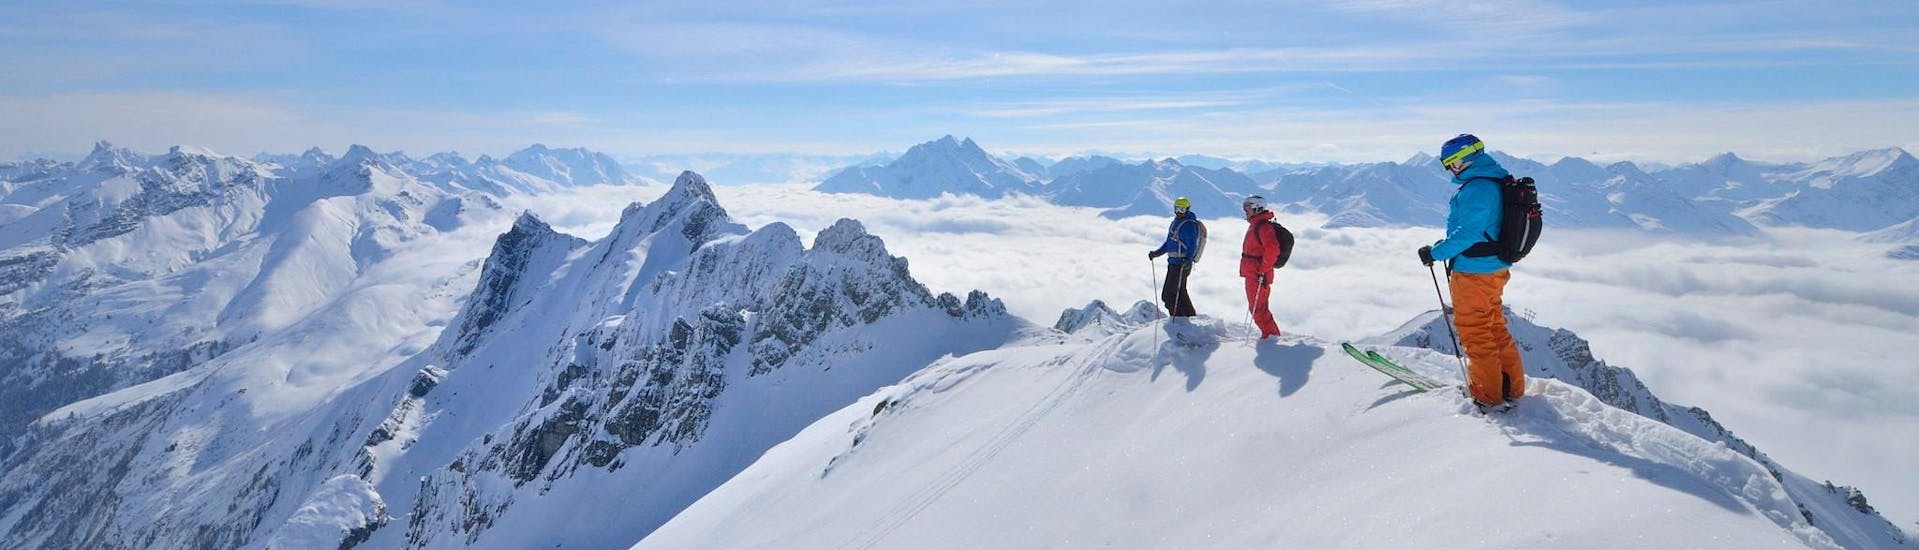 Tres esquiadores que participan en un Clases de seguridad en nieve para todos los niveles de Freeride Hotspot observan desde la cumbre el maravilloso panorama invernal nevado